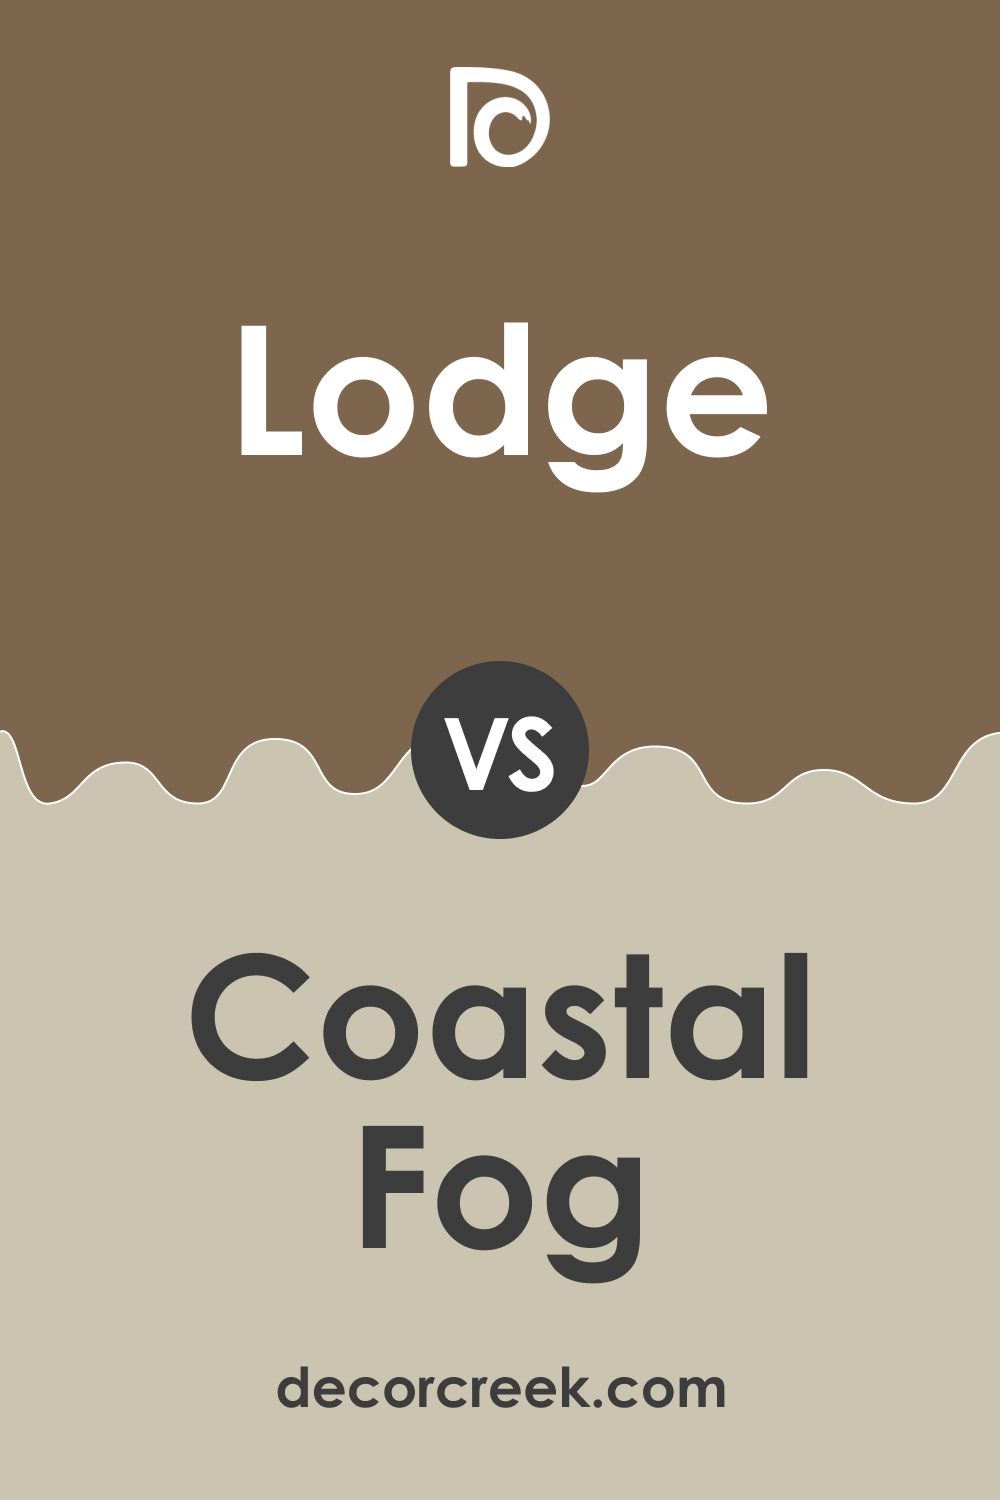 Lodge AF-115 vs. BM 976 Coastal Fog